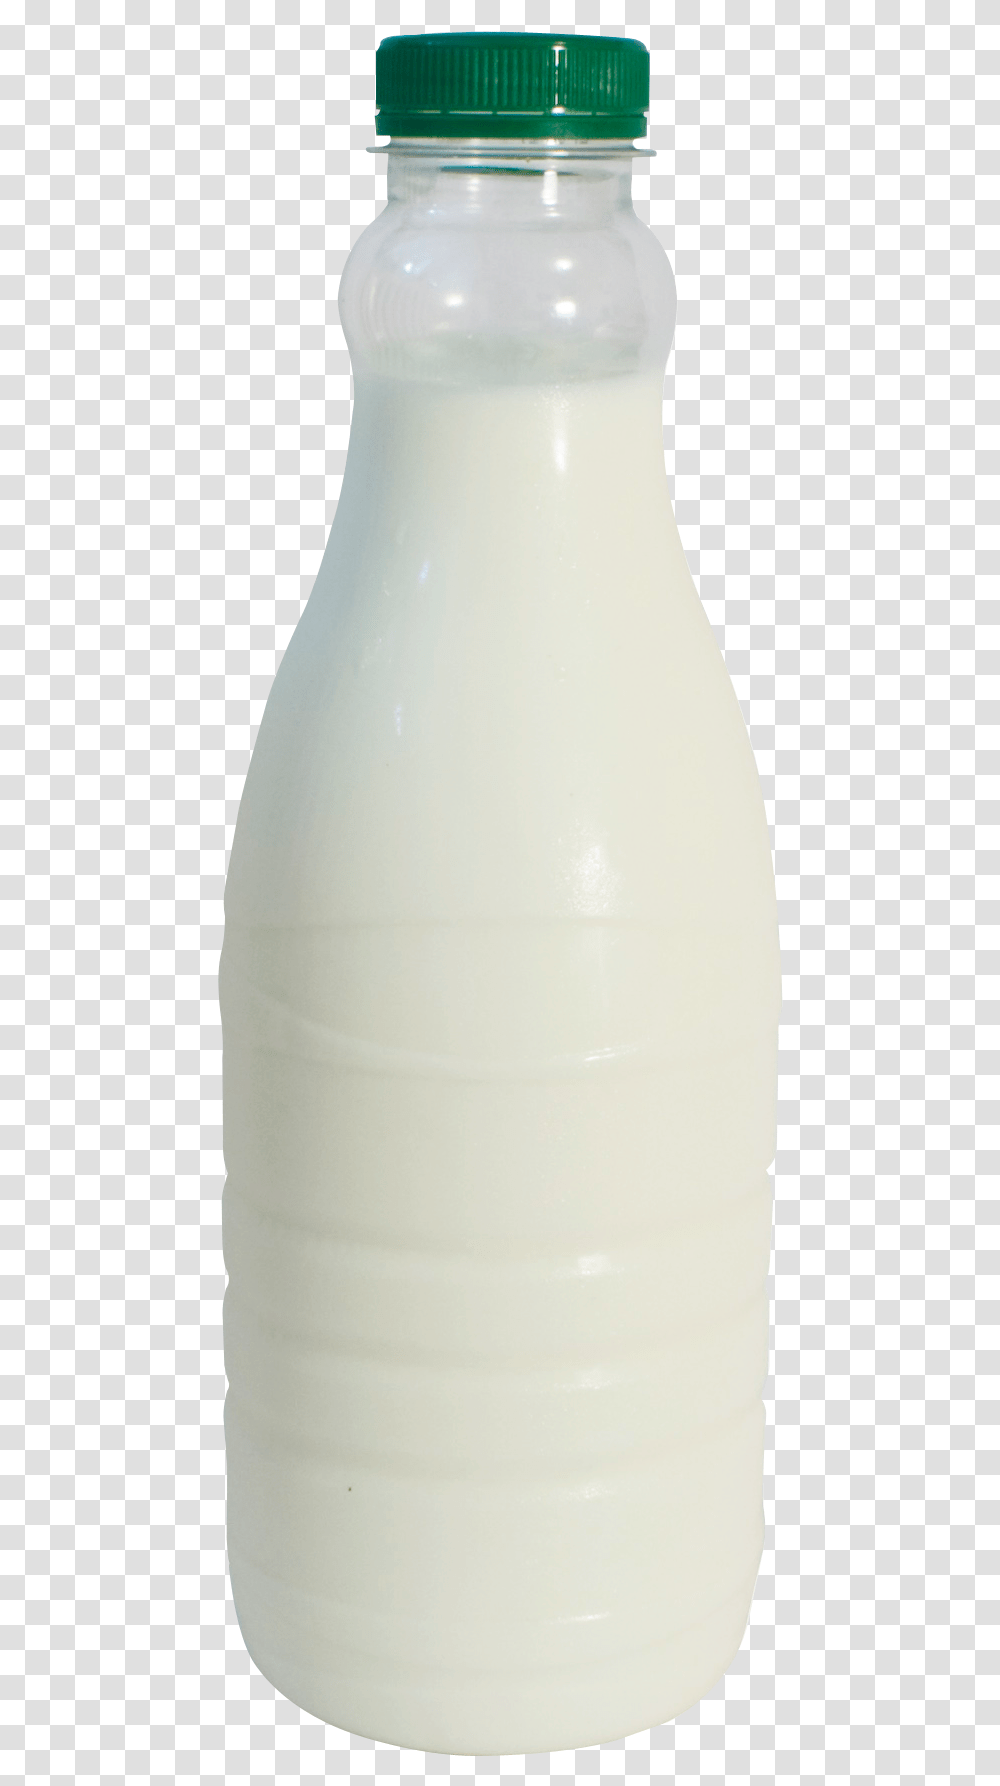 Milk Bottle Image Milk Bottle, Beverage, Drink, Porcelain Transparent Png